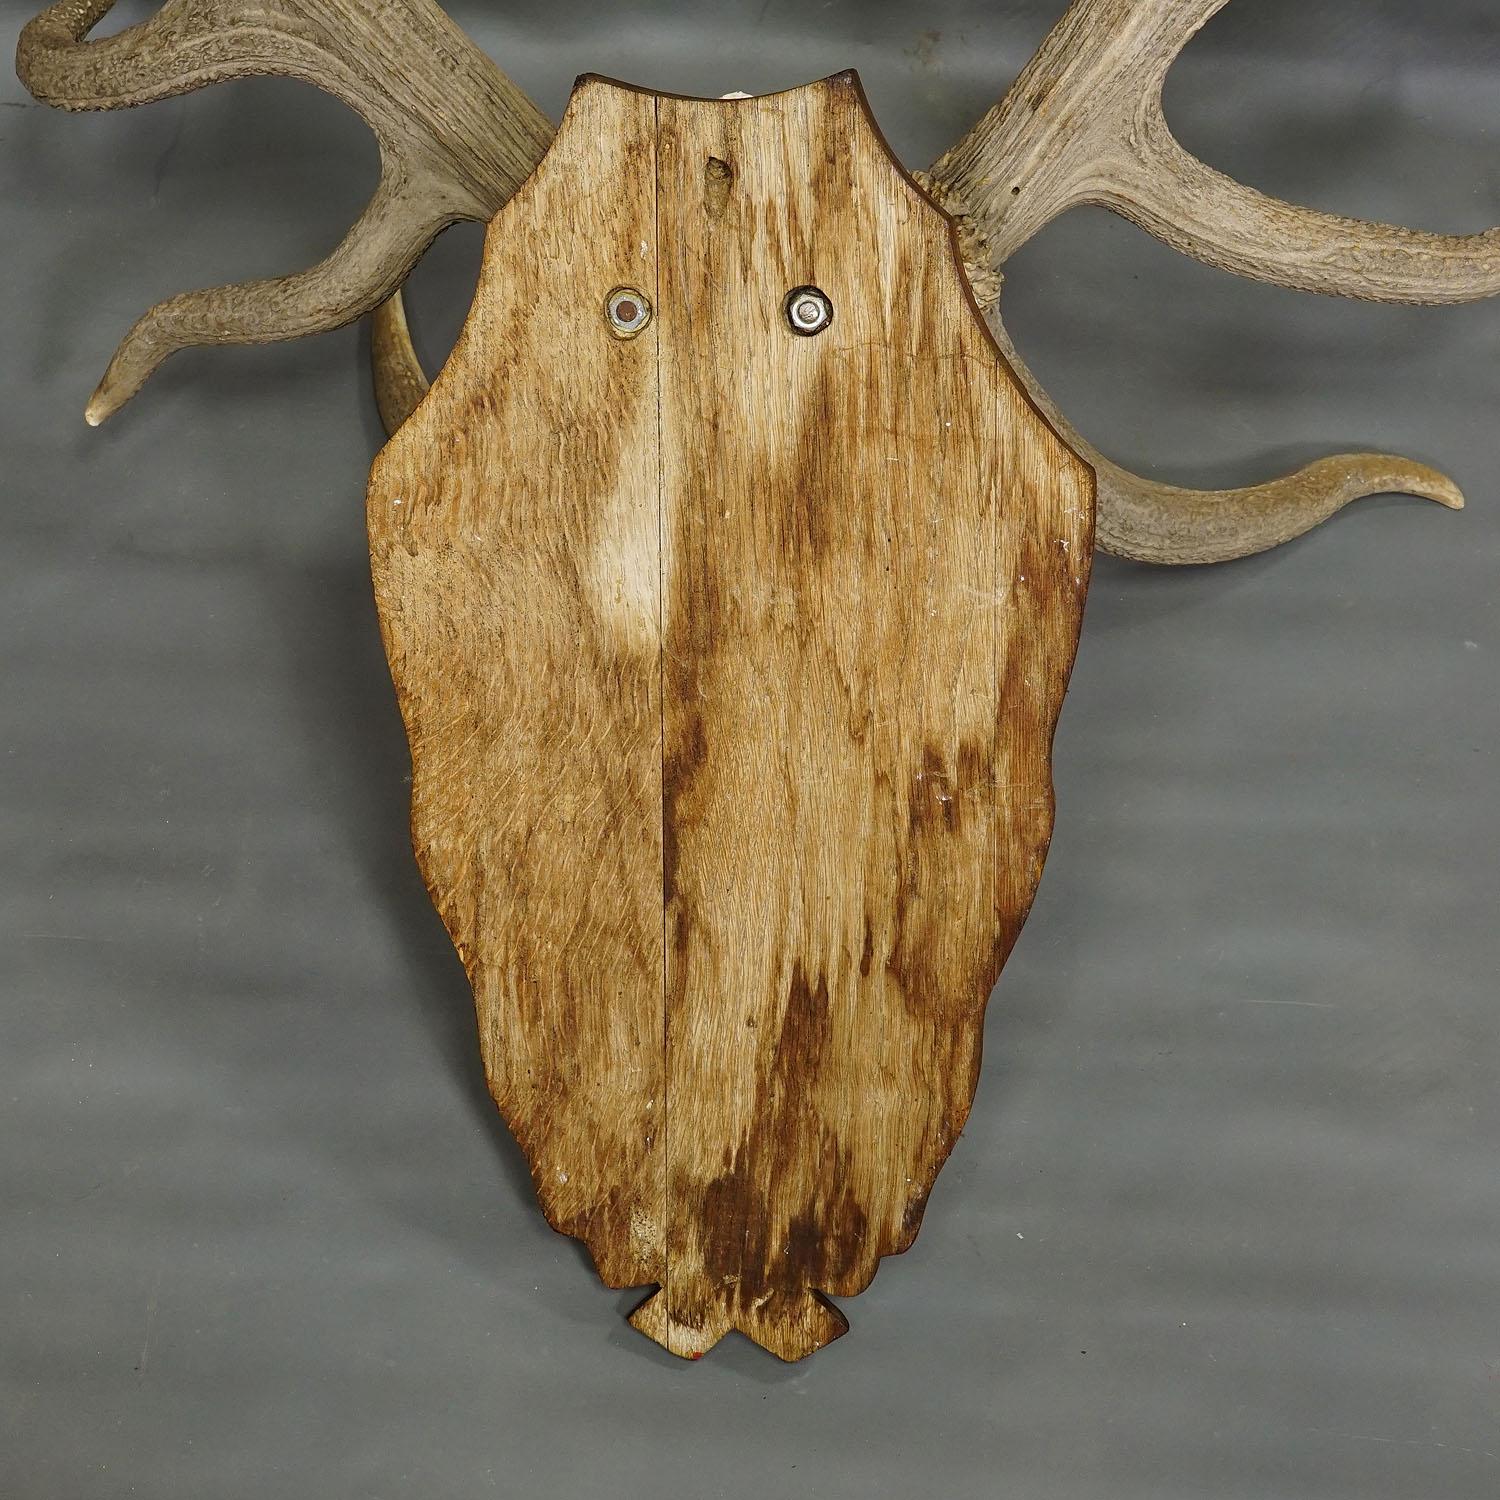 Horn Capital Black Forest 16 Pointer Deer Trophy on Wooden Plaque